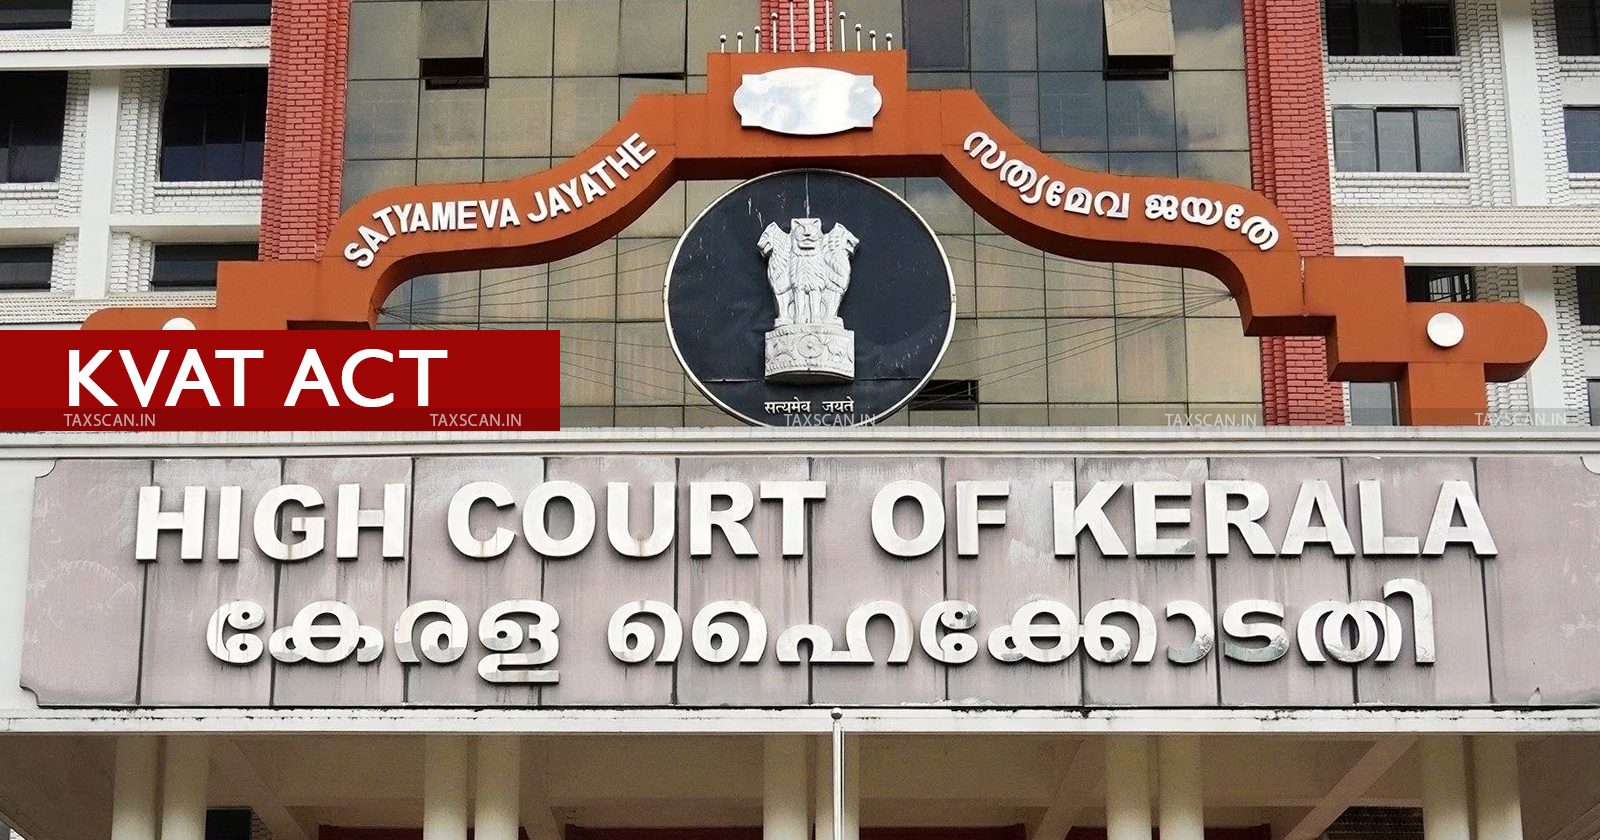 KVAT Act -Kerala High Court - Kerala Value Added Tax - TAXSCAN